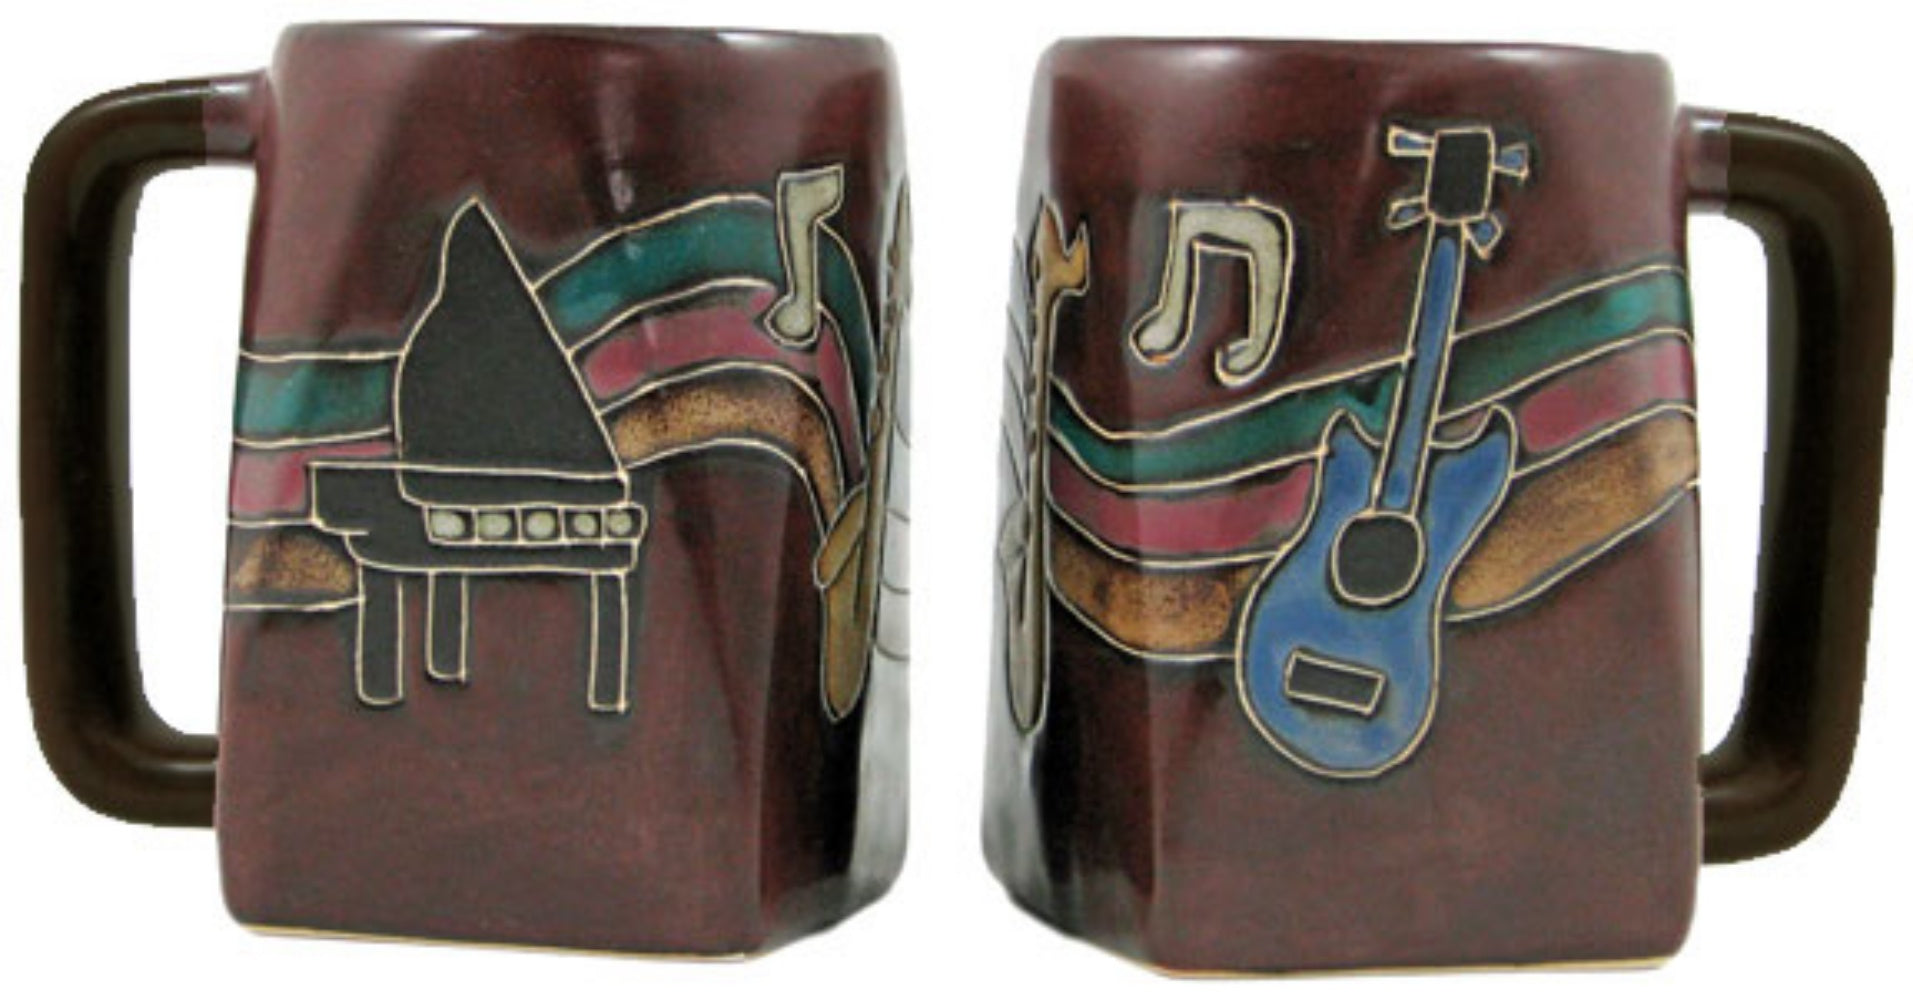 Mara Square Bottom Mug 12 oz - Musical Instruments   511V4